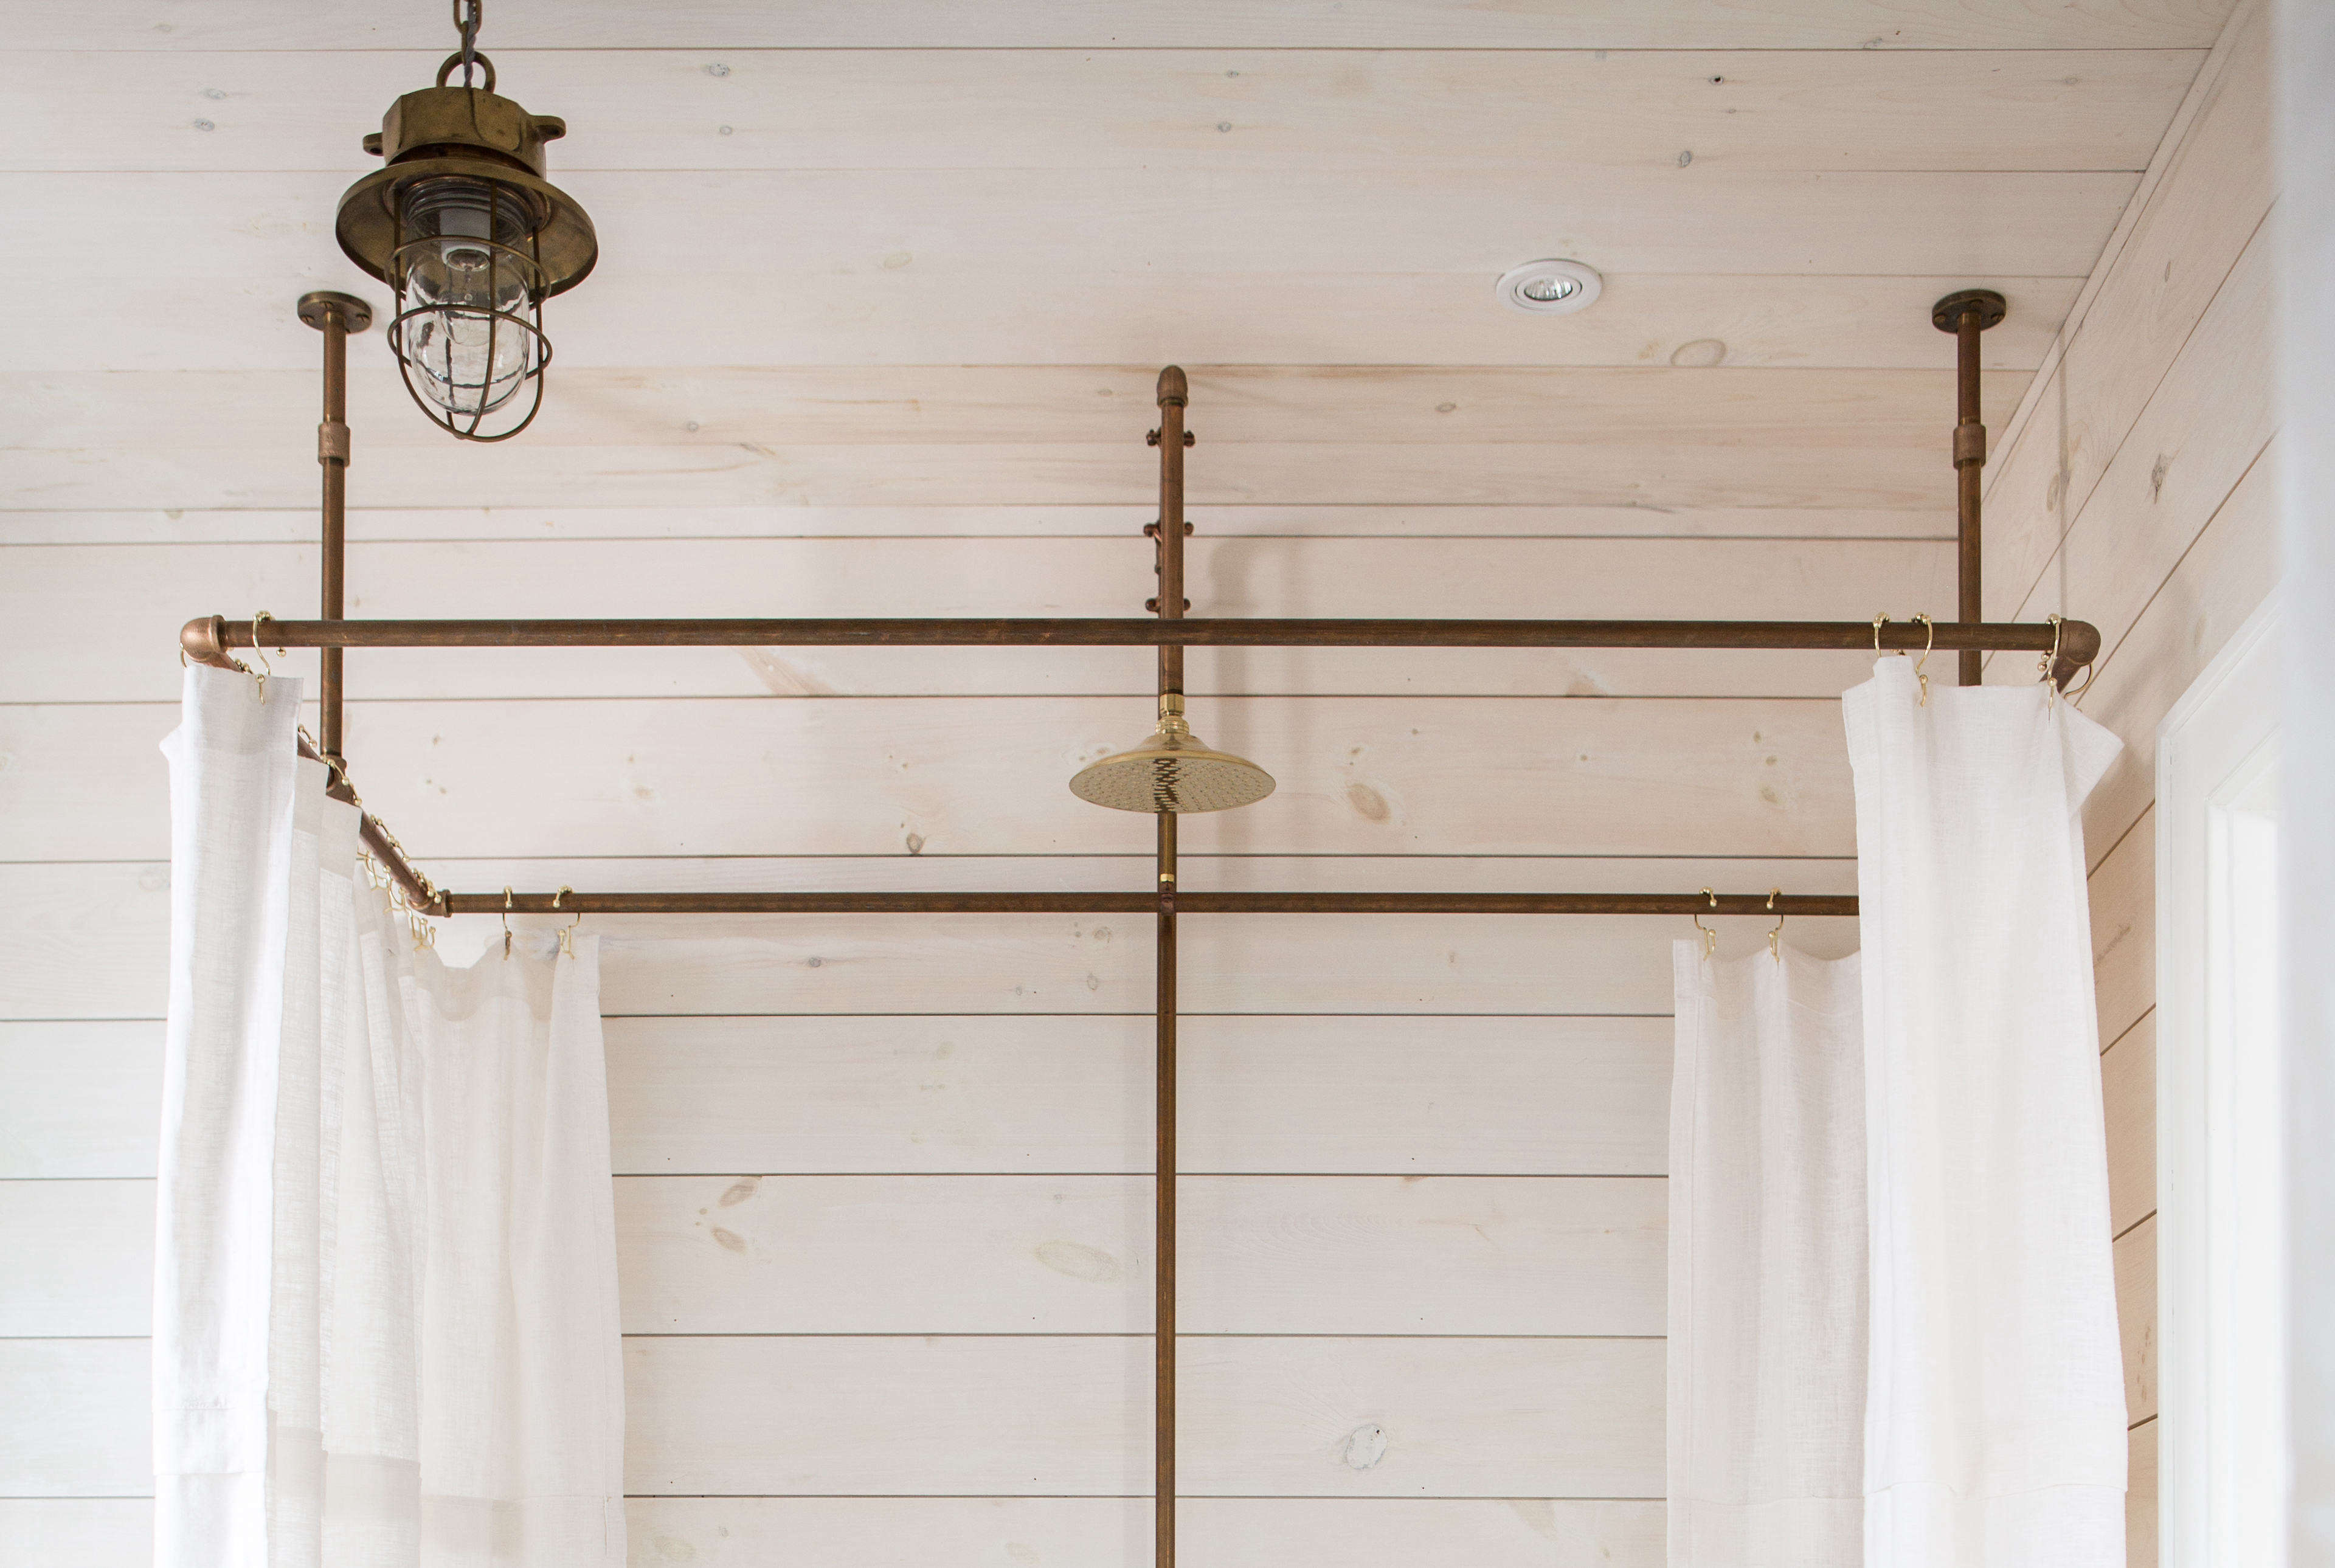 A Diy Shower Curtain Hoop Made From, Zenna Home Hoop Shower Curtain Rod